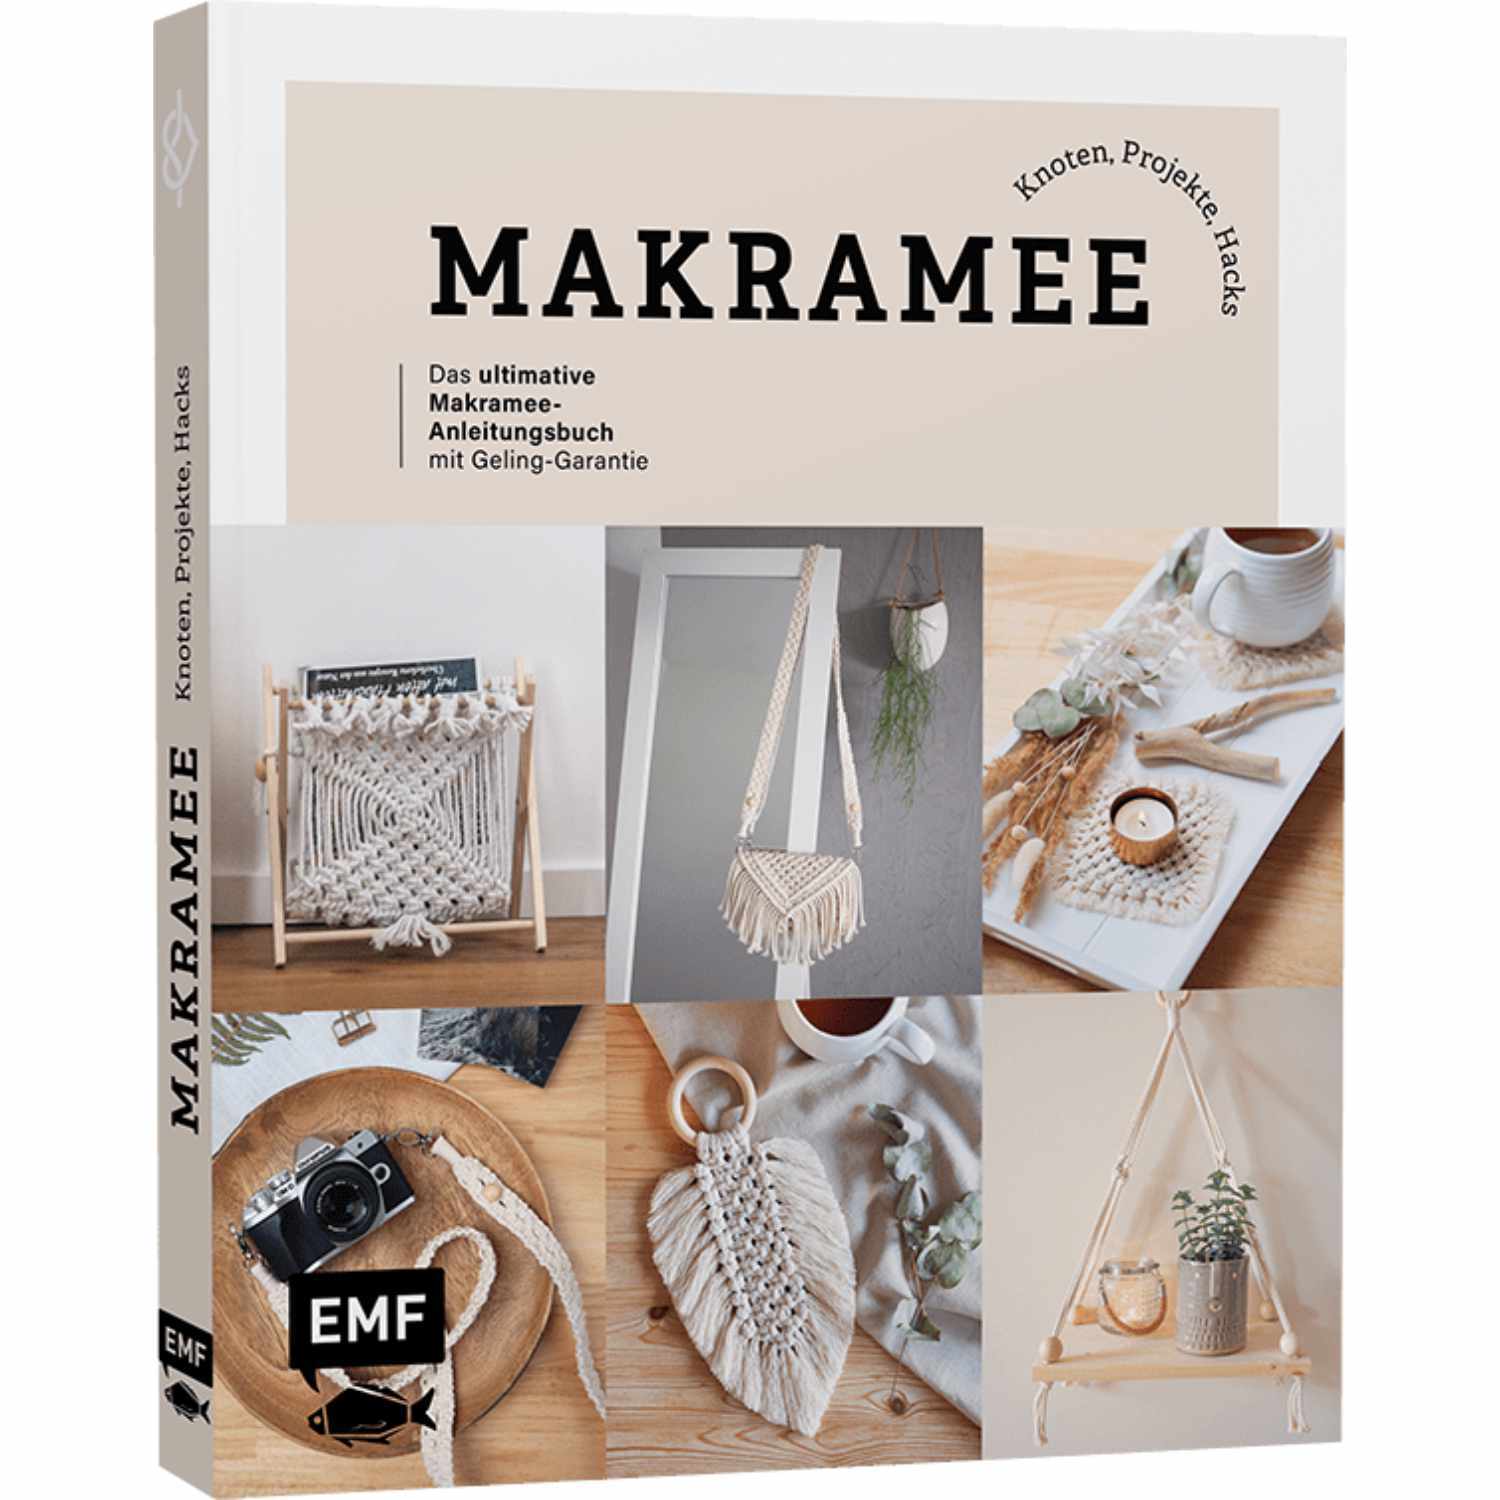 Makramee: Knoten, Projekte, Hacks - Makramee-Anleitungsbuch